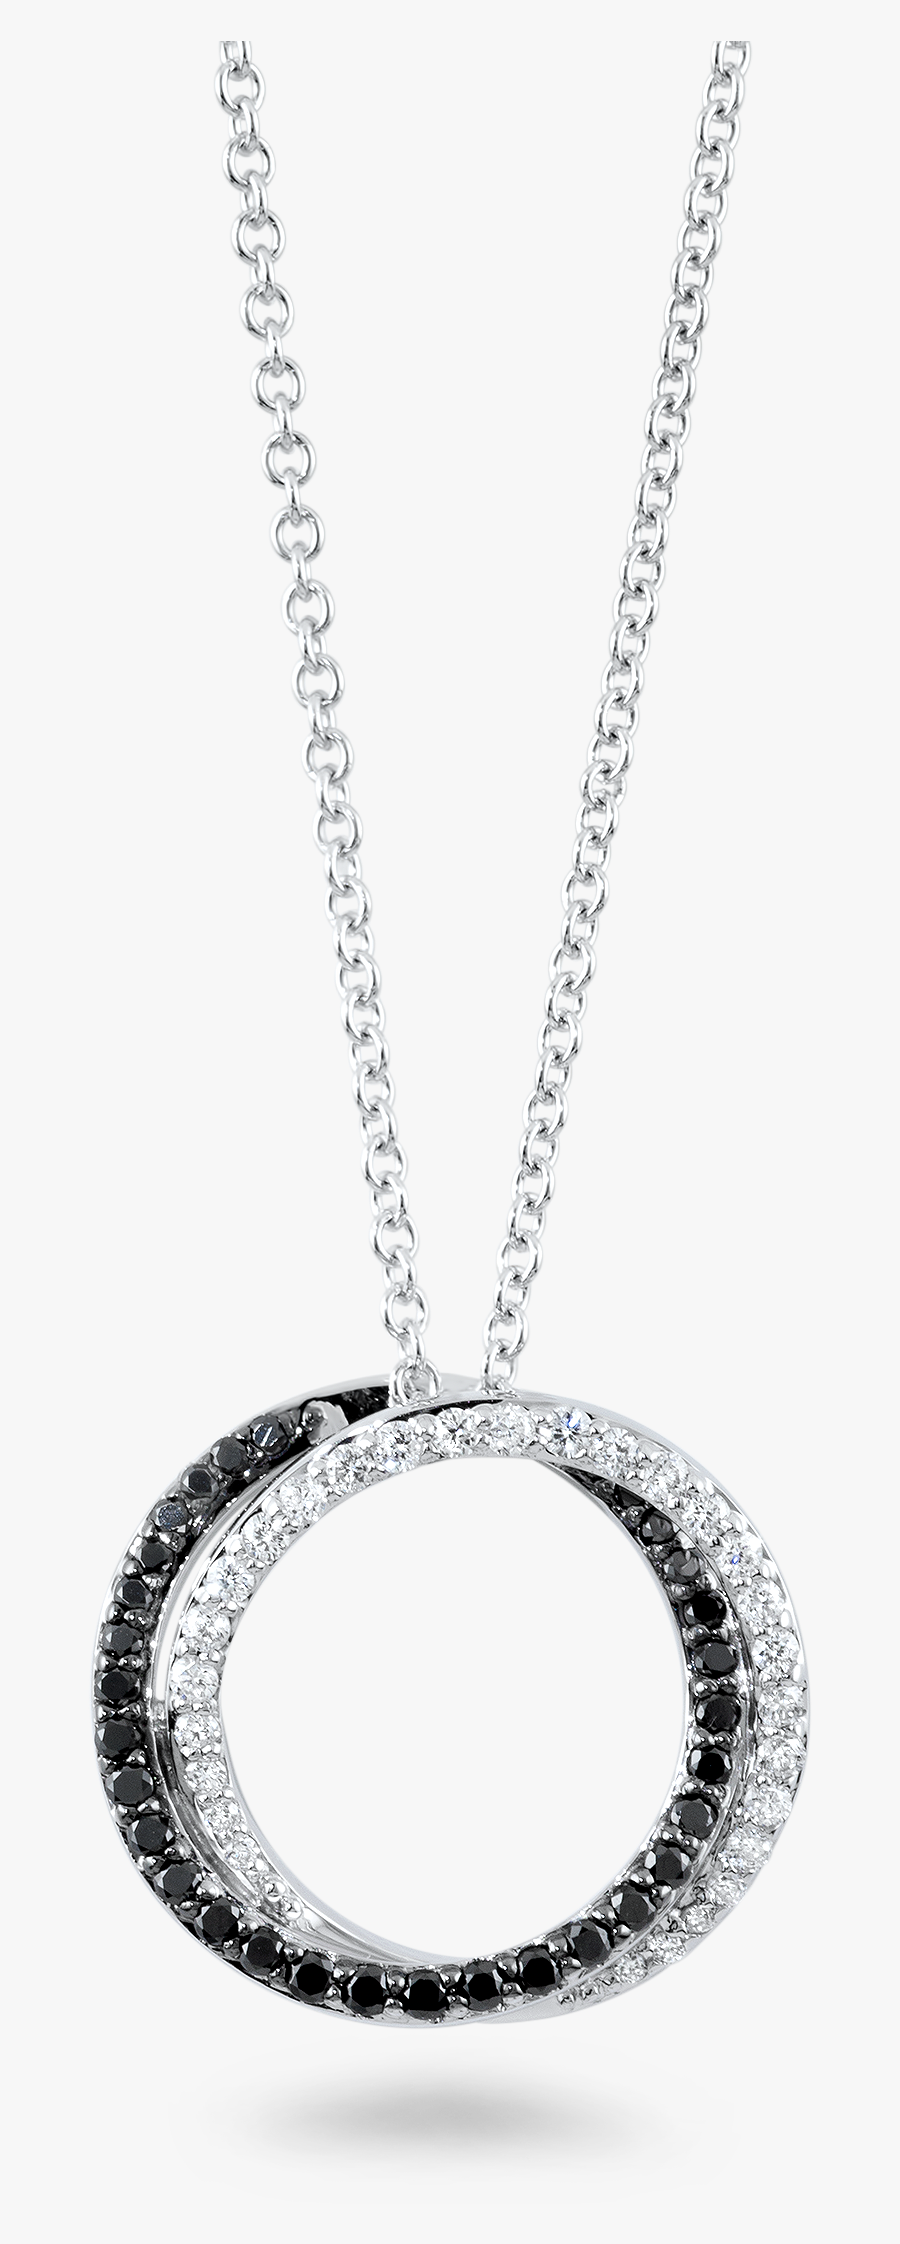 Black Diamond Necklace Png, Transparent Clipart